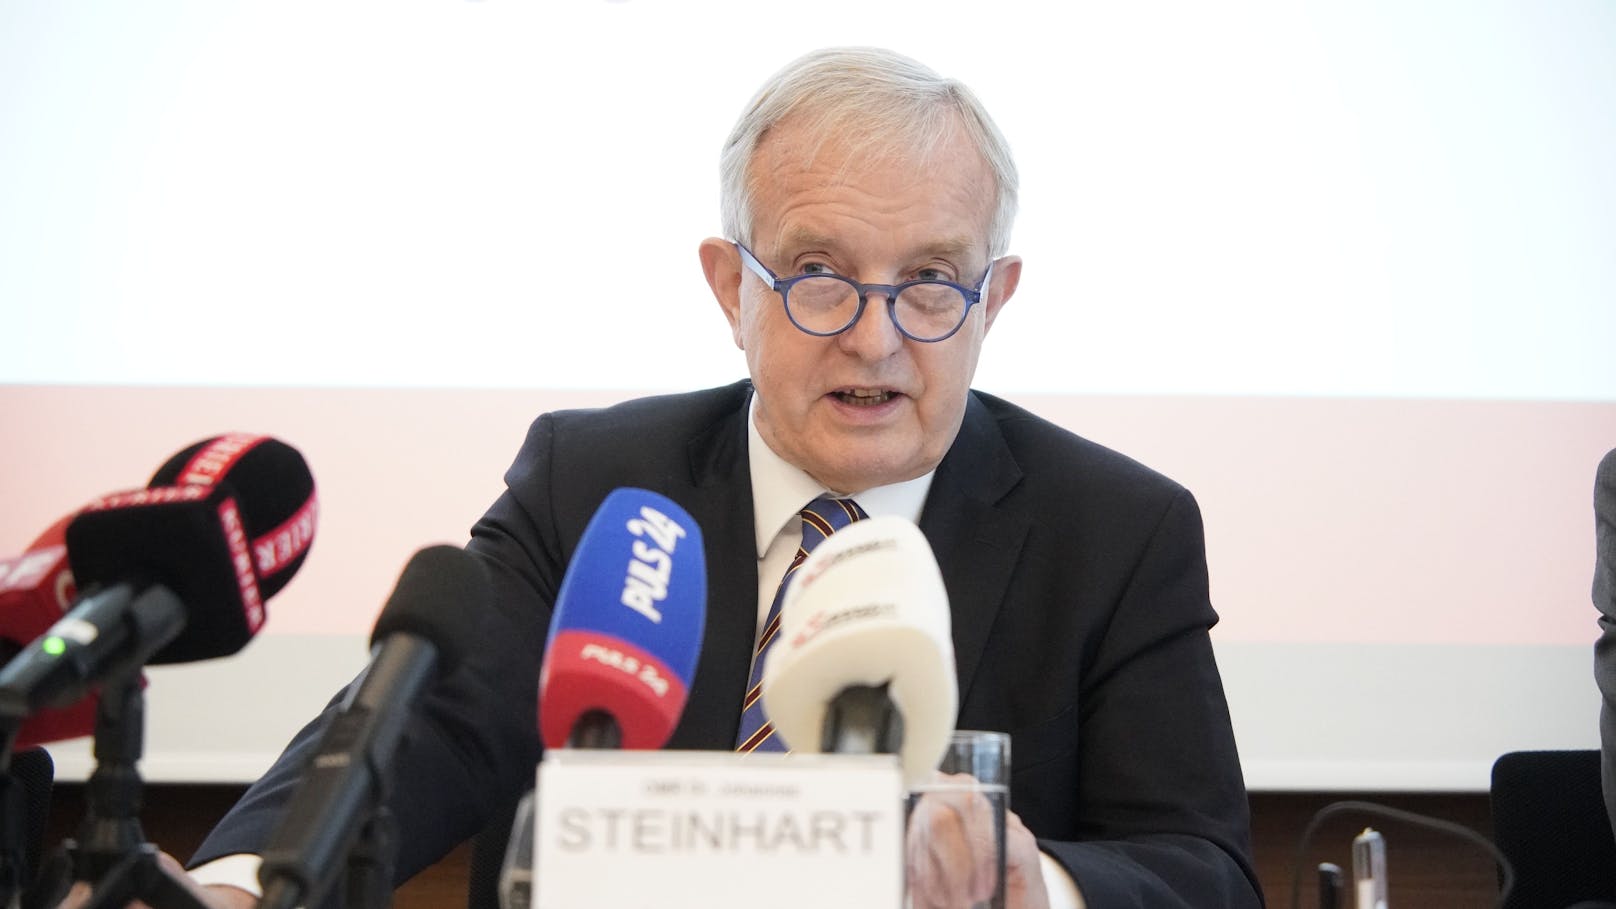 "Die Ergebnisse der vorliegenden Studie sind erschreckend", sagt Ärztekammerpräsident Johannes Steinhart